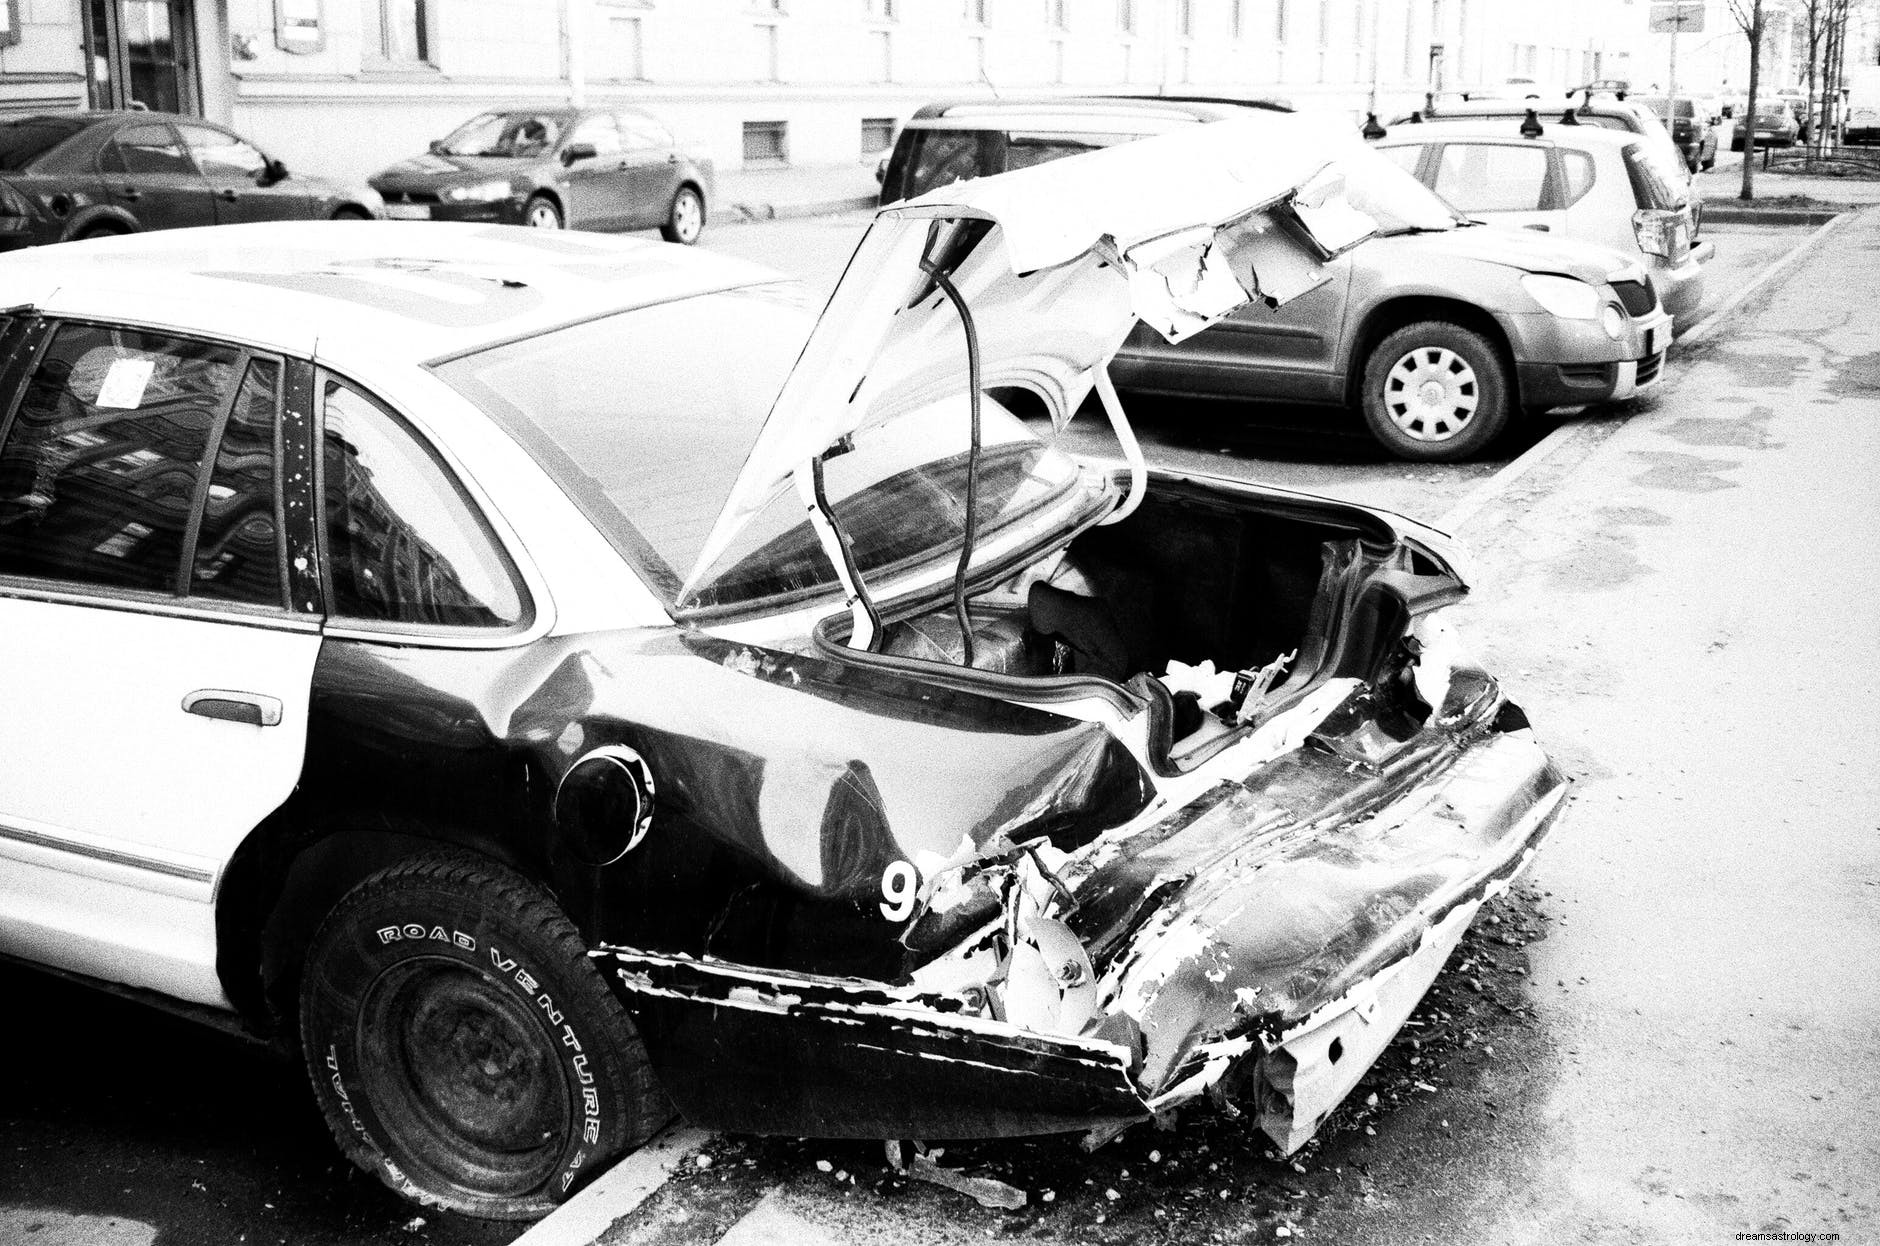 Mimpi Tentang Kecelakaan Mobil:Makna Dan Simbolisme